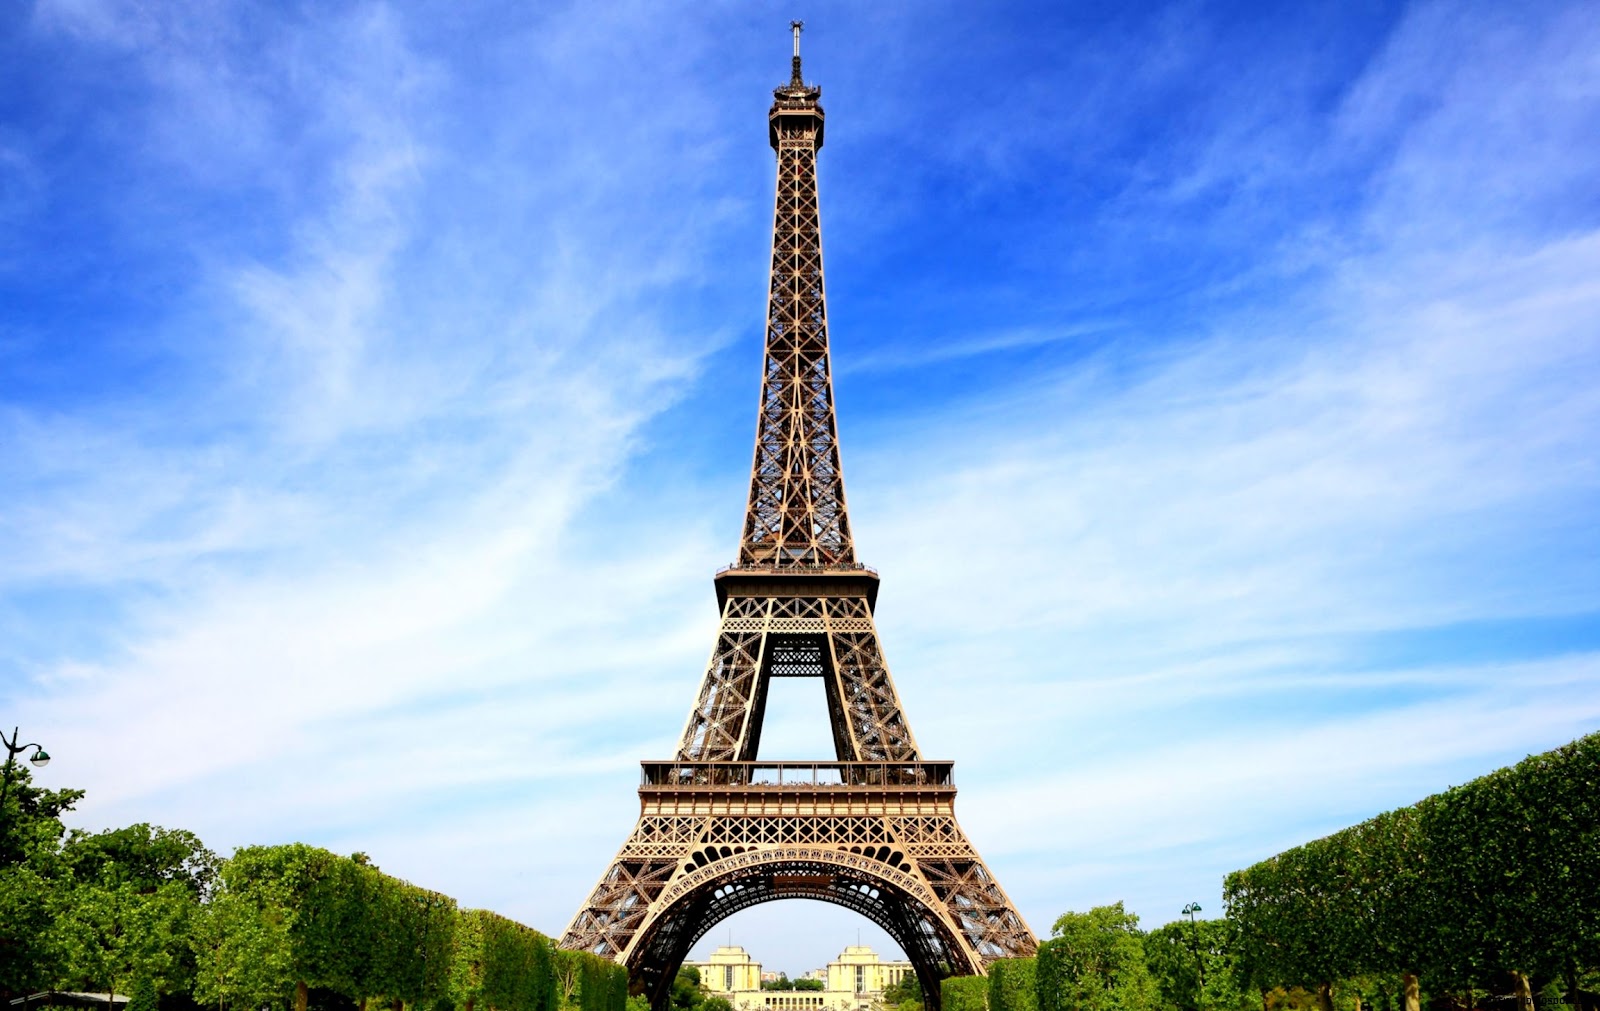 Eiffel Tower Hd Wallpaper